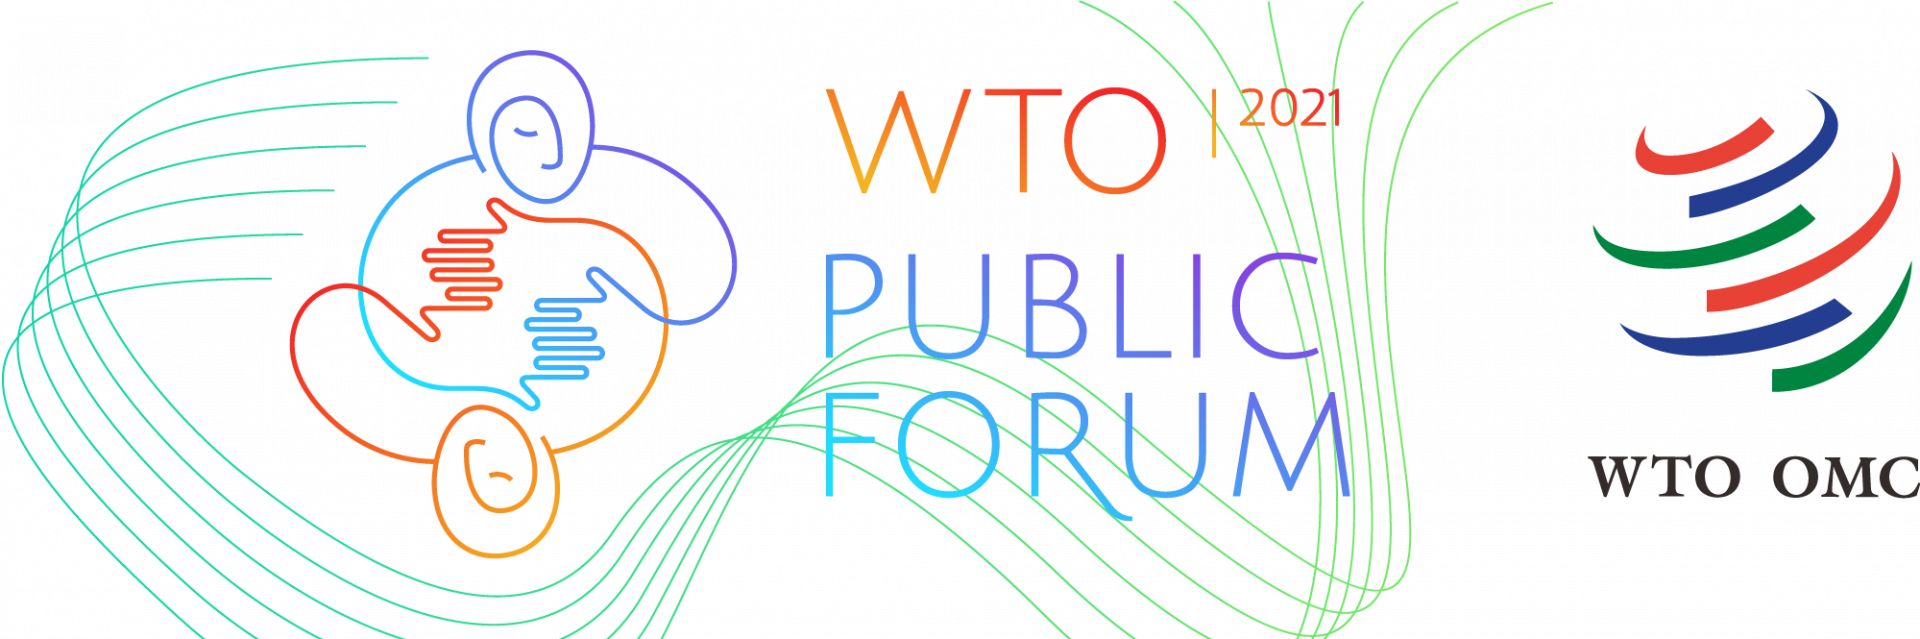 WTO Public Forum 2021